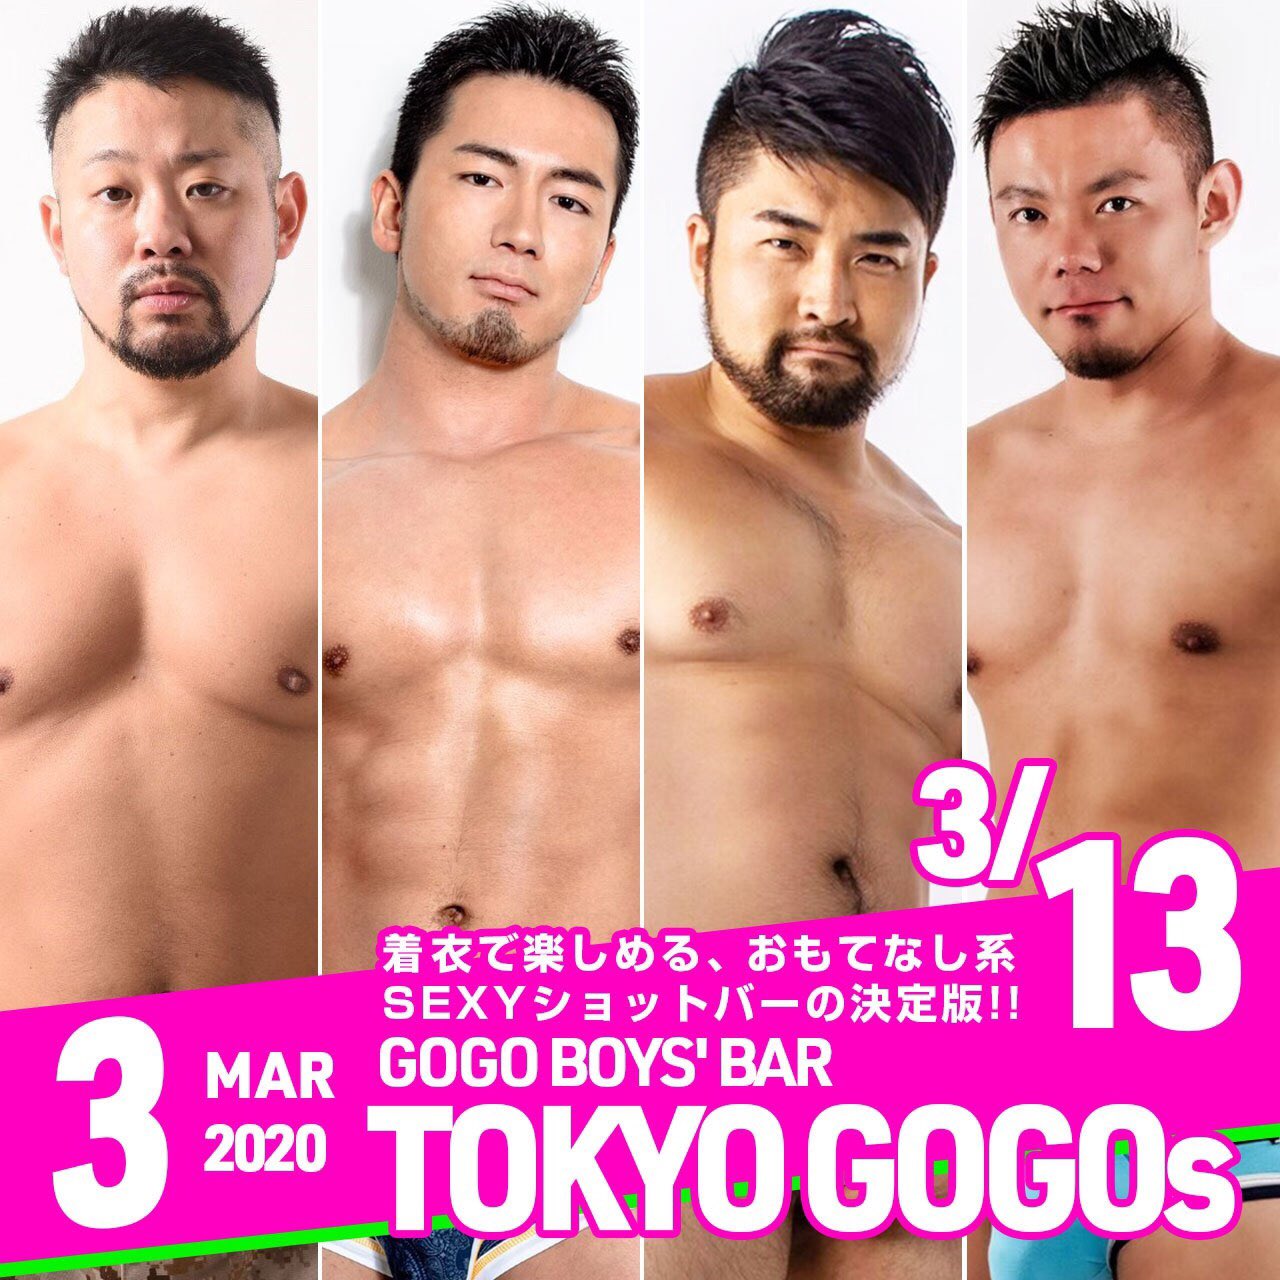 GOGO BOYS' BAR "TOKYO GOGOs"